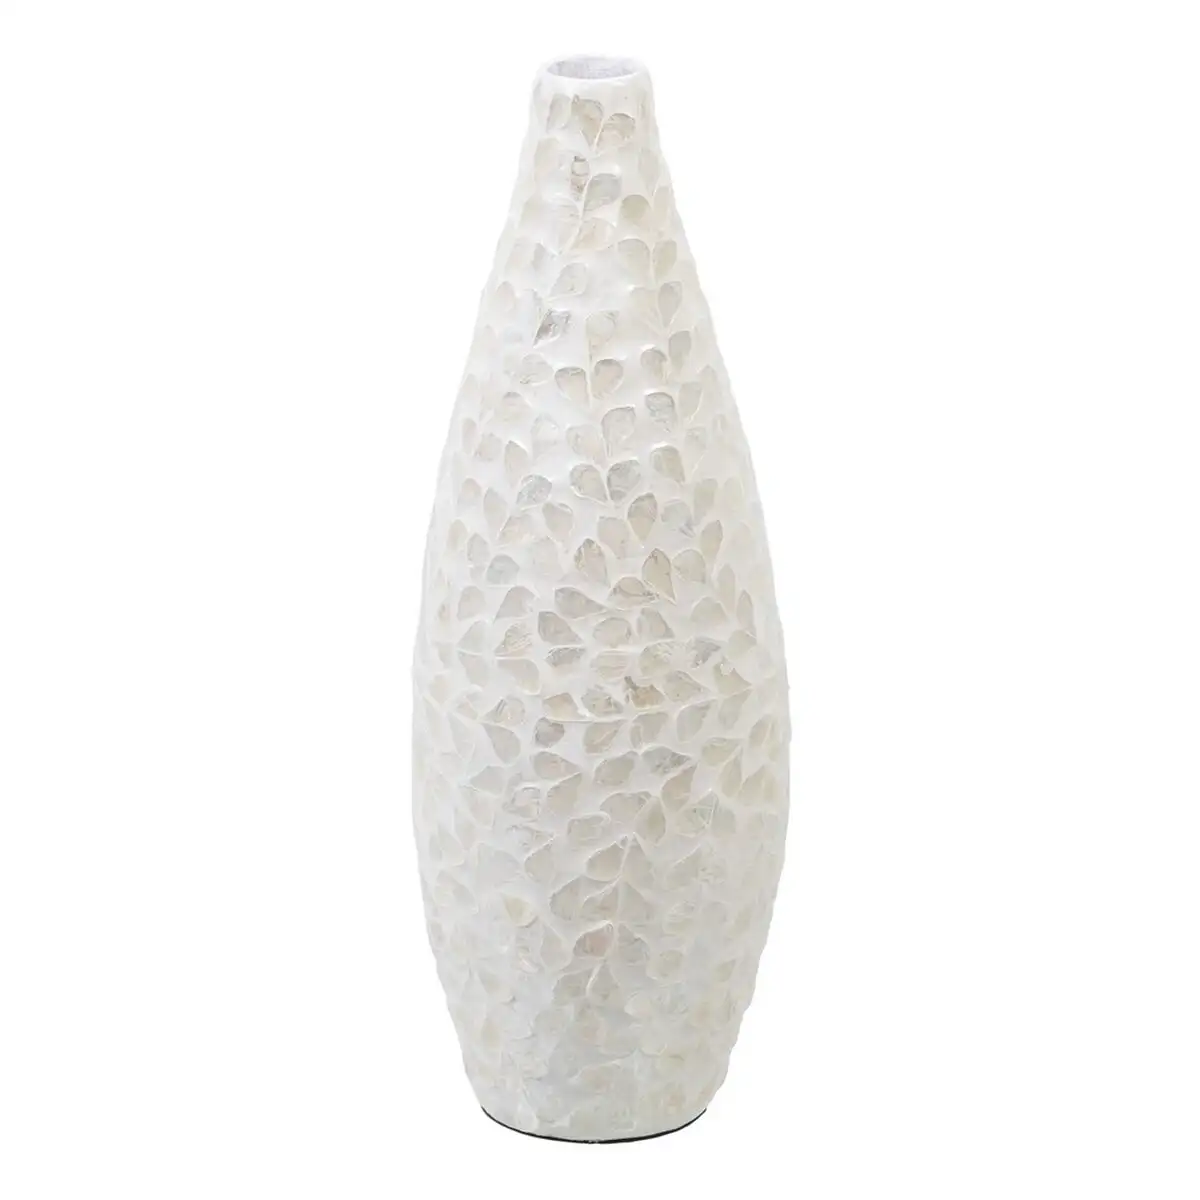 Vase 15 x 15 x 44 cm beige nacre bois mdf_3083. DIAYTAR SENEGAL - Où la Qualité et la Diversité Fusionnent. Explorez notre boutique en ligne pour découvrir une gamme variée de produits qui incarnent l'excellence et l'authenticité.